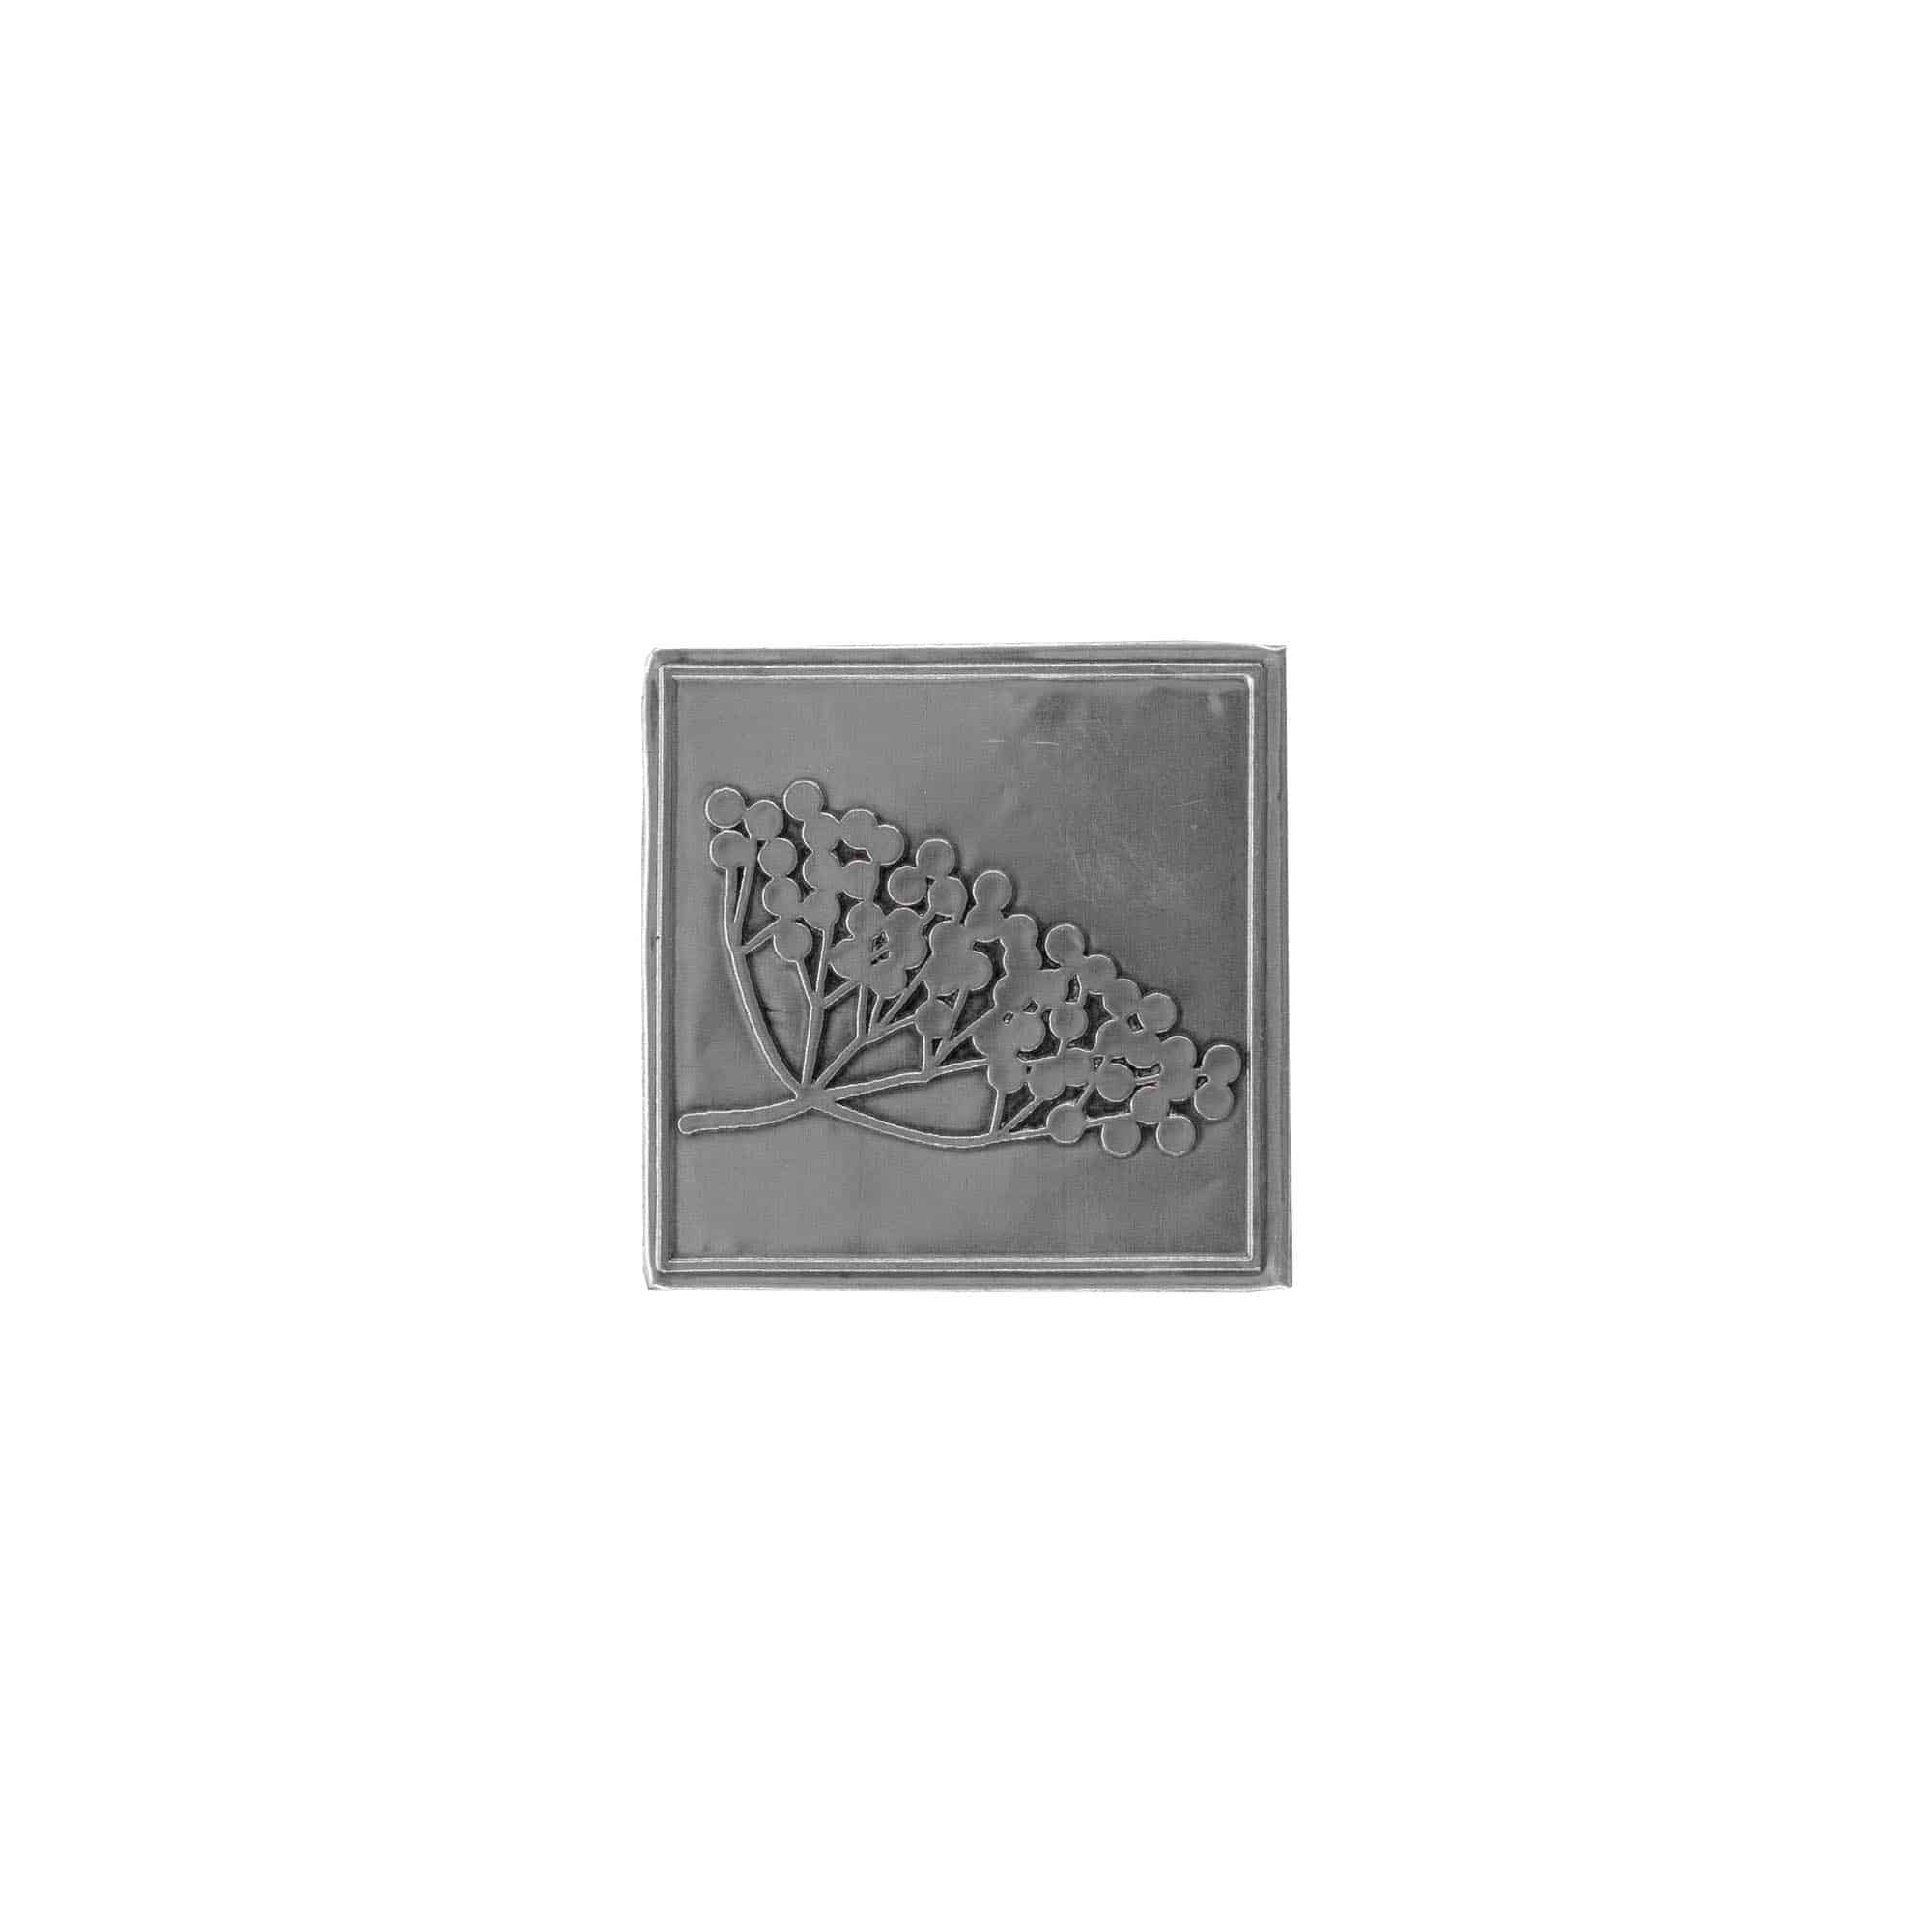 Etykieta cynowa 'Czarny bez', kwadratowa, metal, kolor srebrny